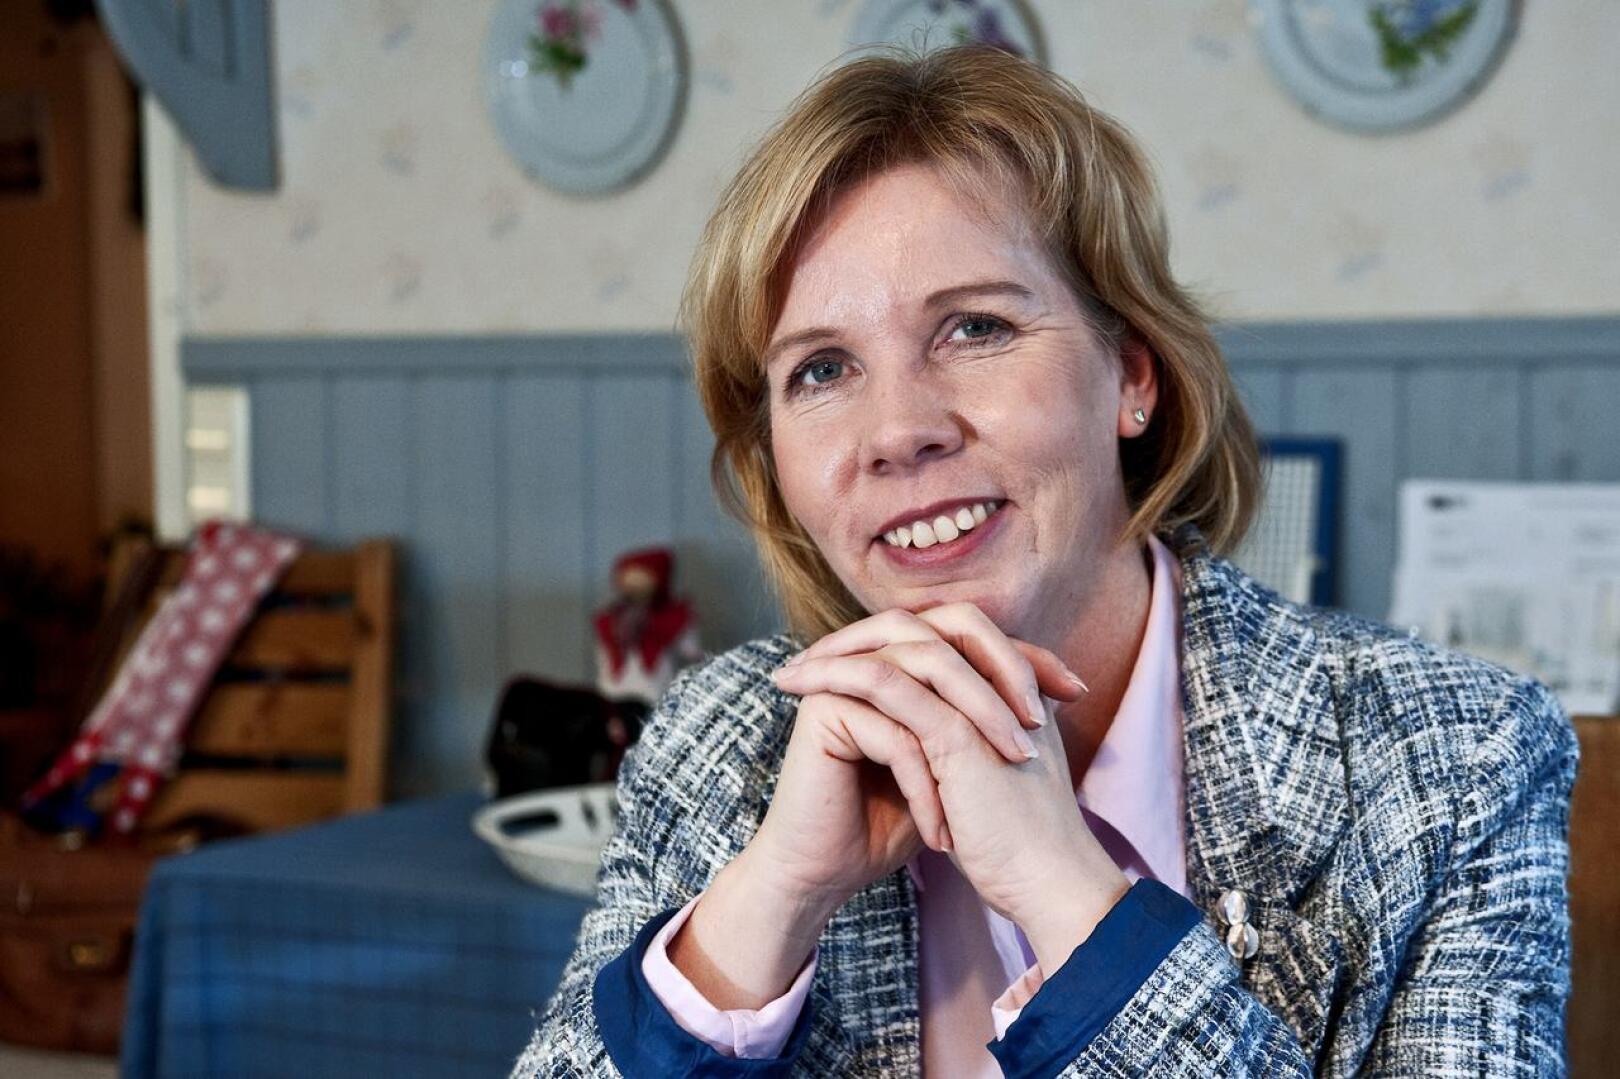 Oikeusministeri Anna-Maja Henriksson kertoi, että RKP on juuri perustanut uuden yhdistyksen: Tukholman RKP:n.